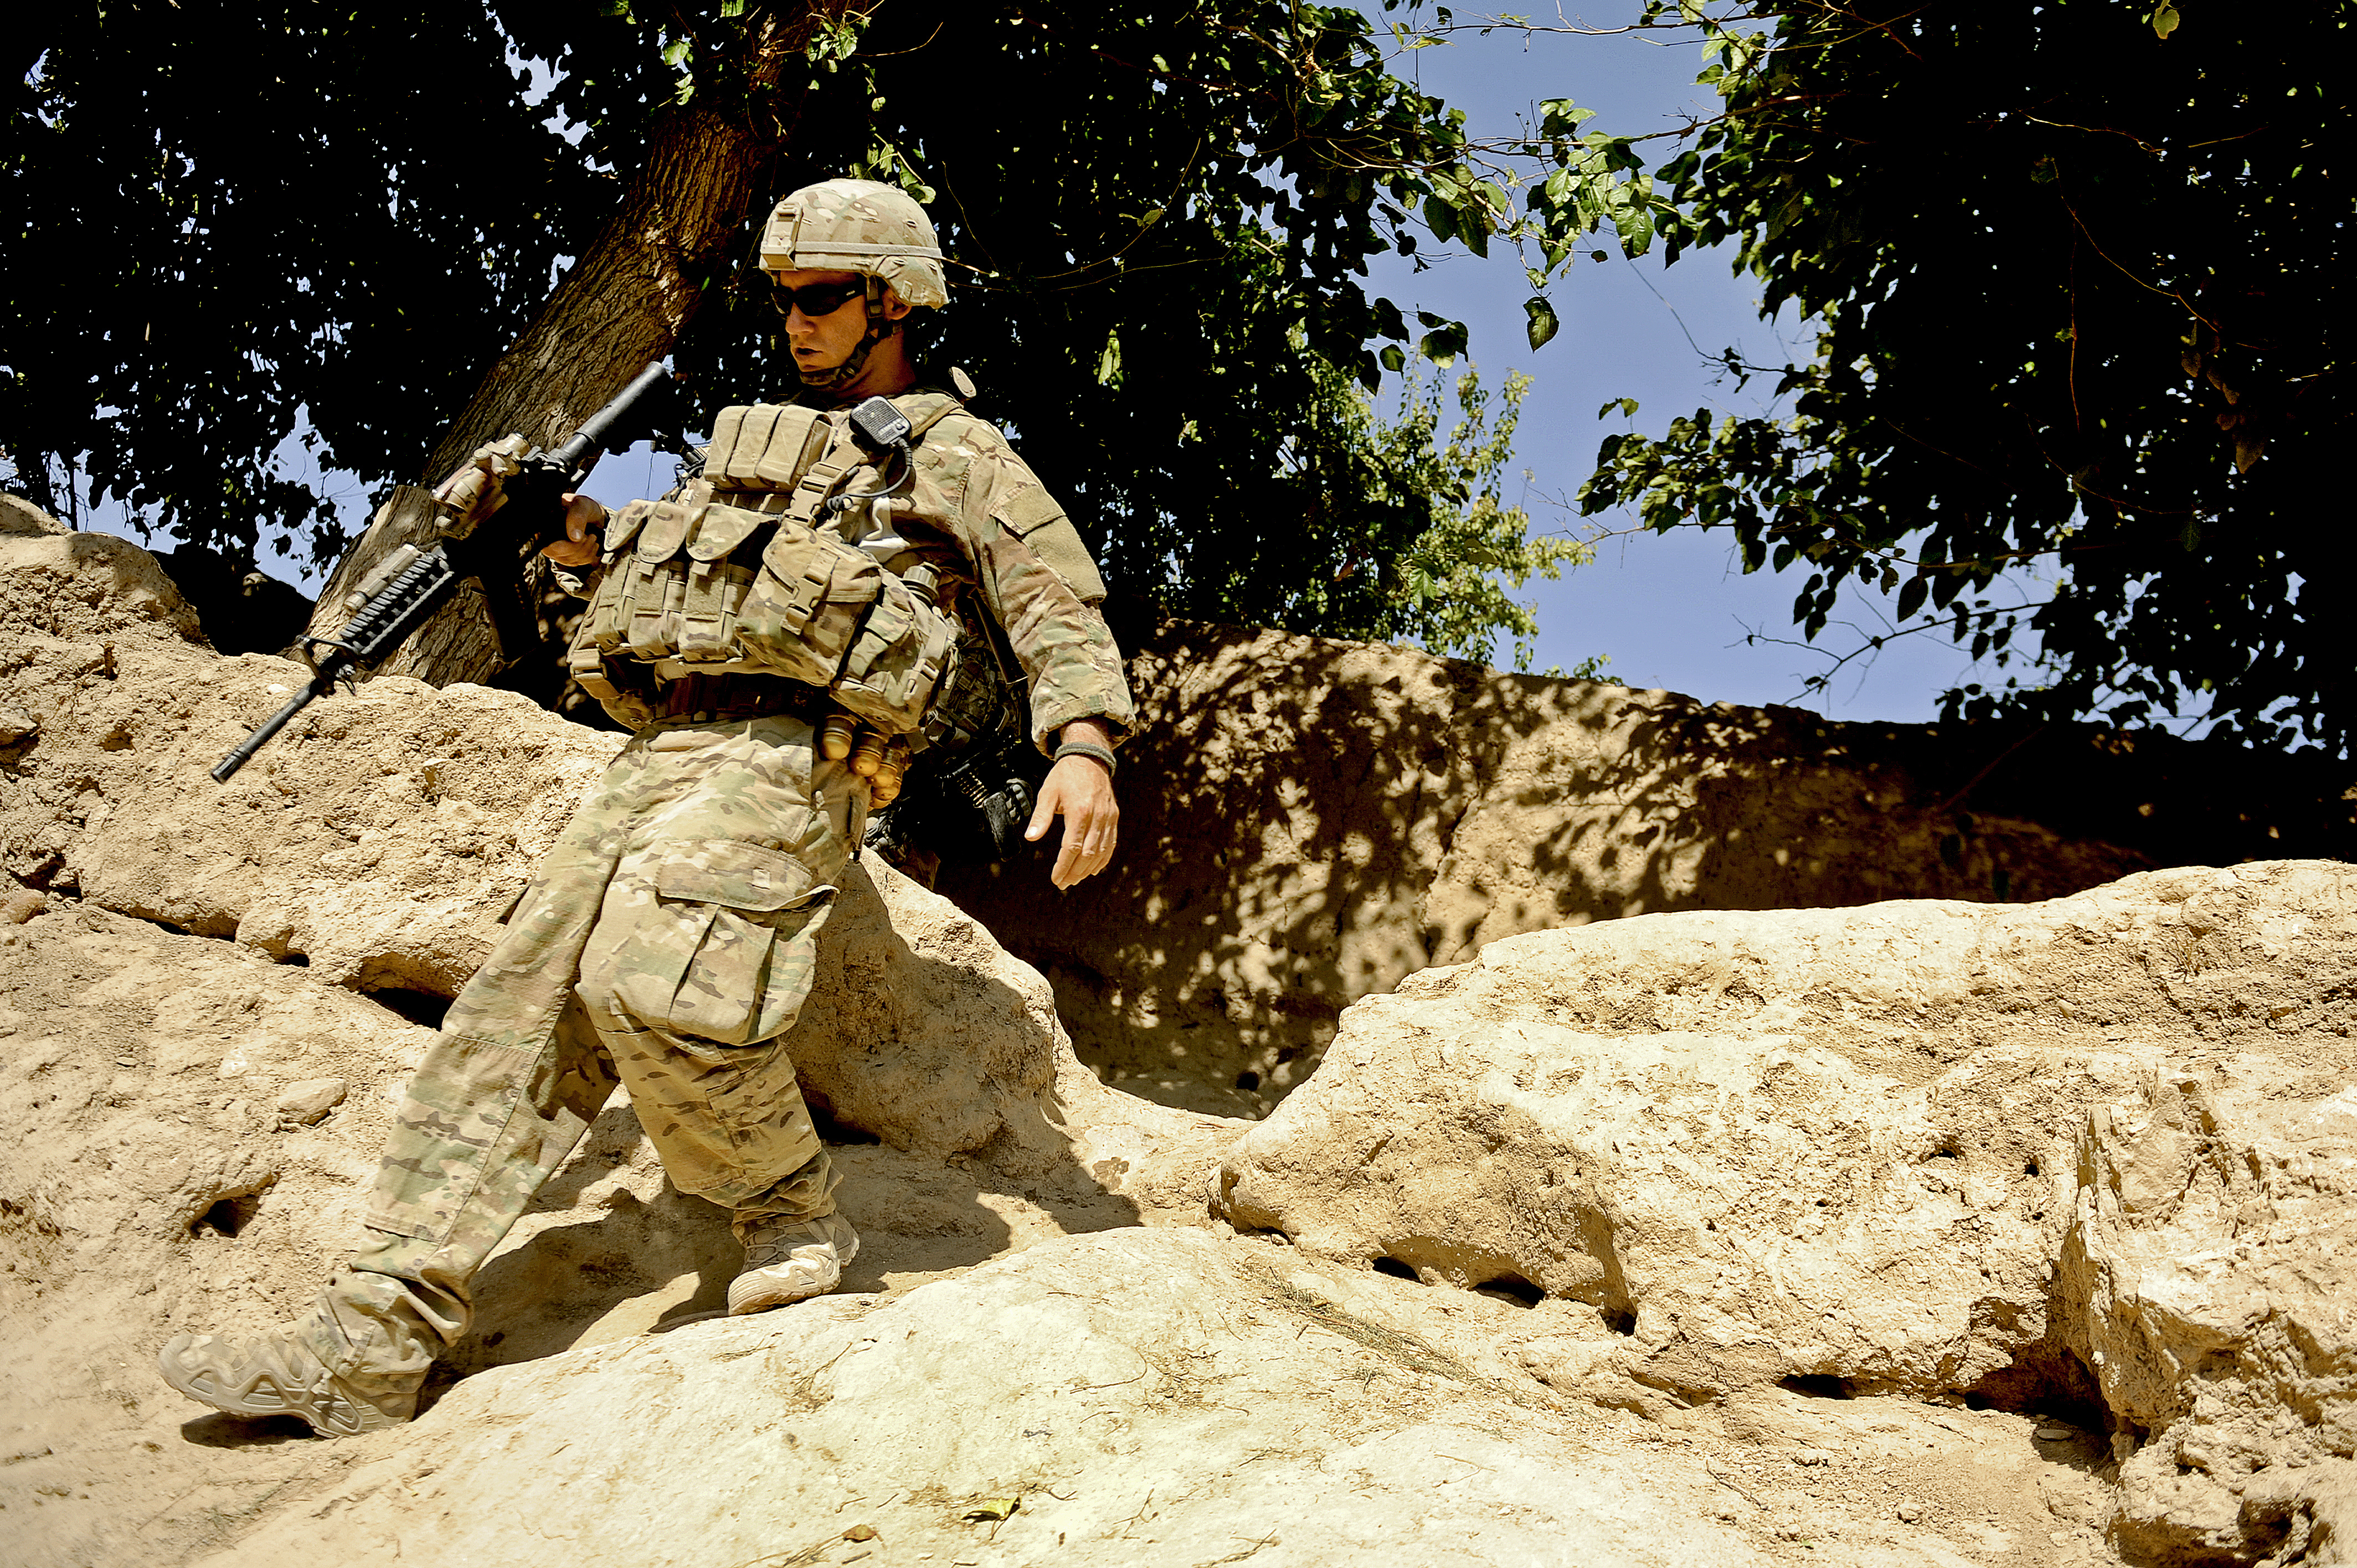 Читать земляной солдат. Снаряжение солдат США В Афганистане. Солдаты США В Афганистане 2002-2004 экипировка. Экипировка американского солдата в Афганистане. Солдаты США В Афганистане.